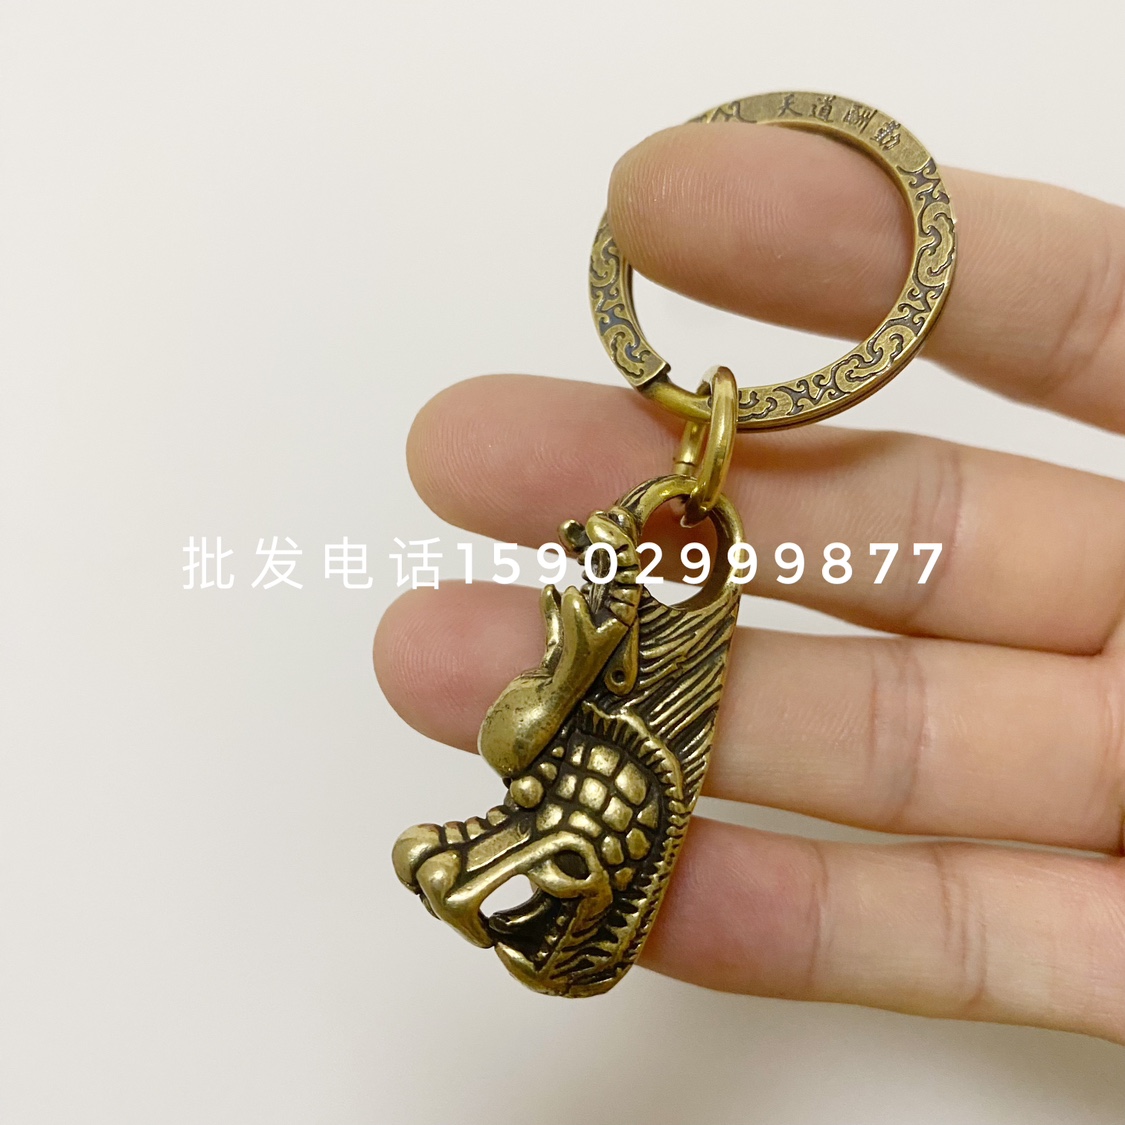 龙抬头汽车钥匙挂件黄铜龙头钥匙扣男士个性创意纯黄铜龙饰品钥匙